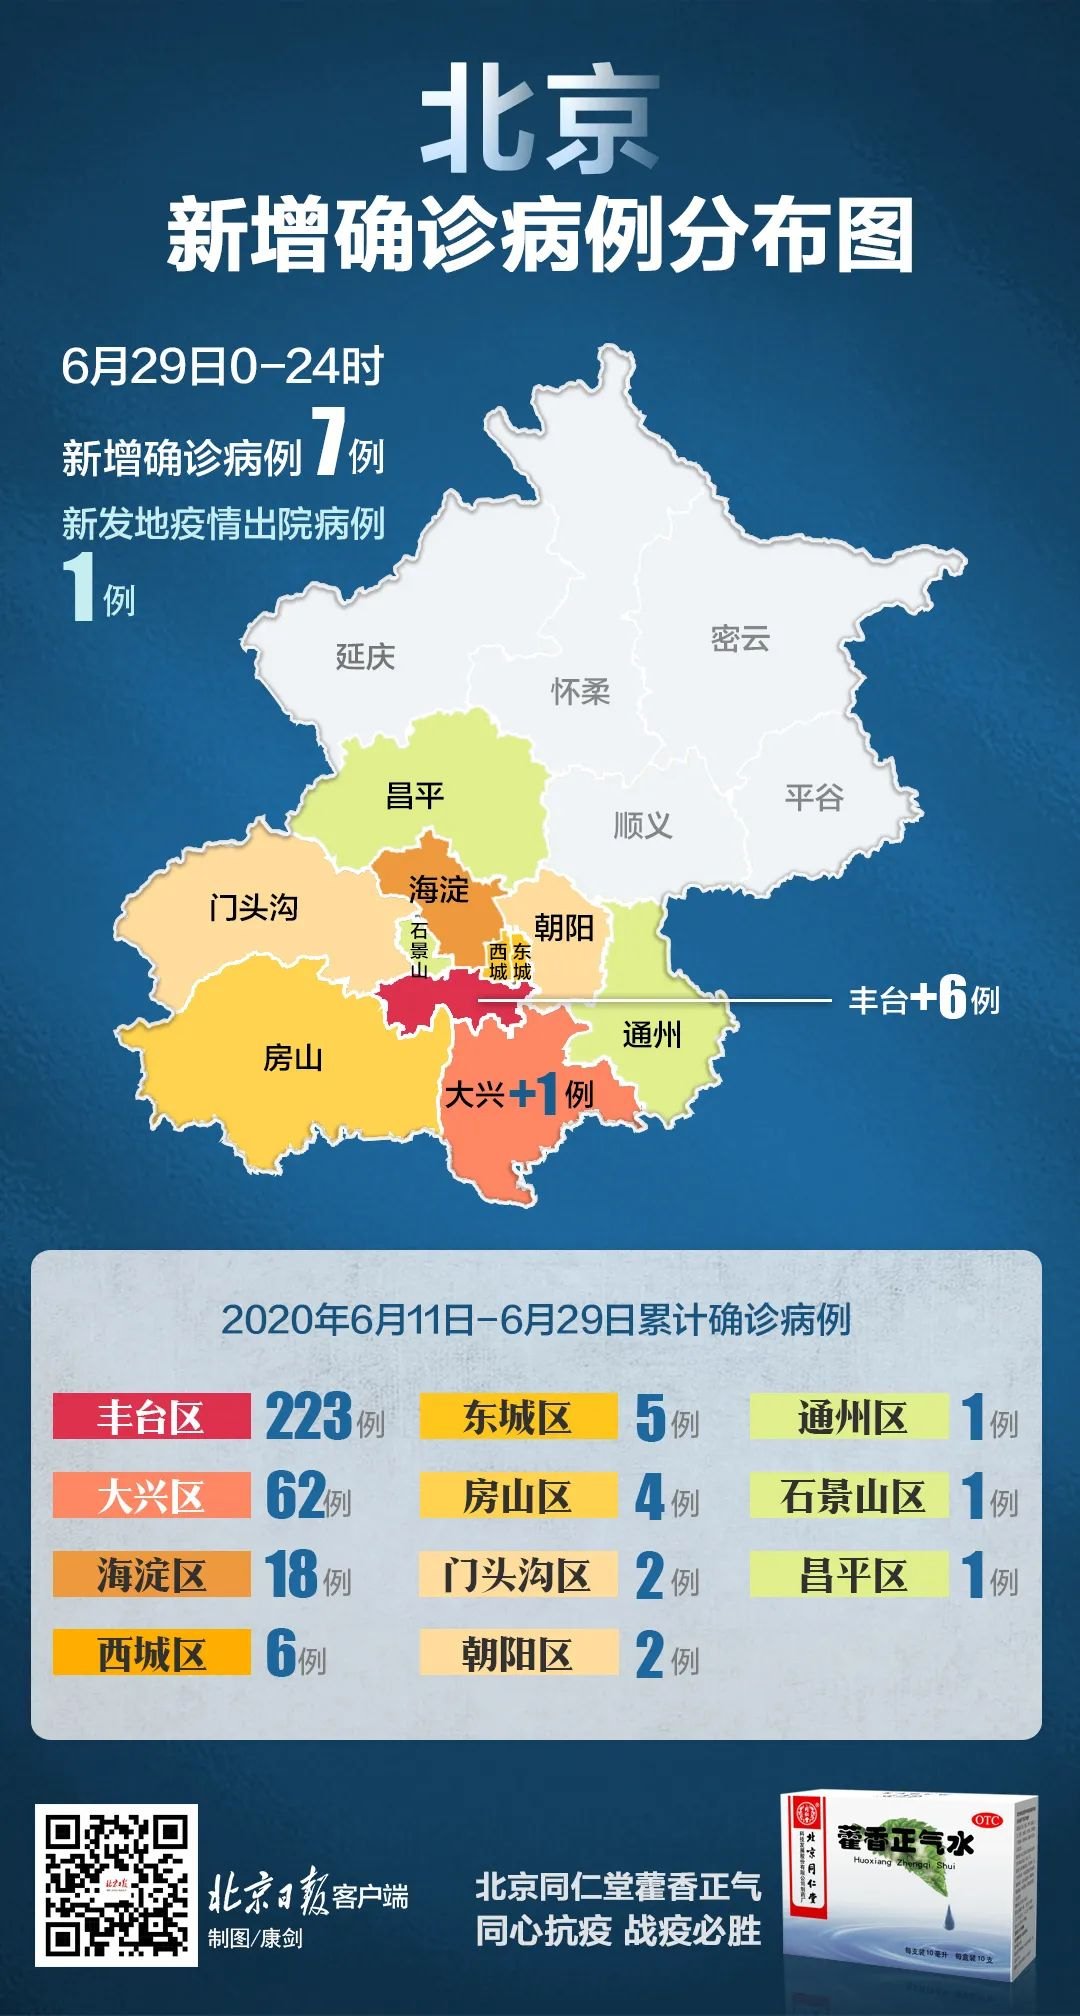 【疫情】北京新增确诊7例,在这两个区!